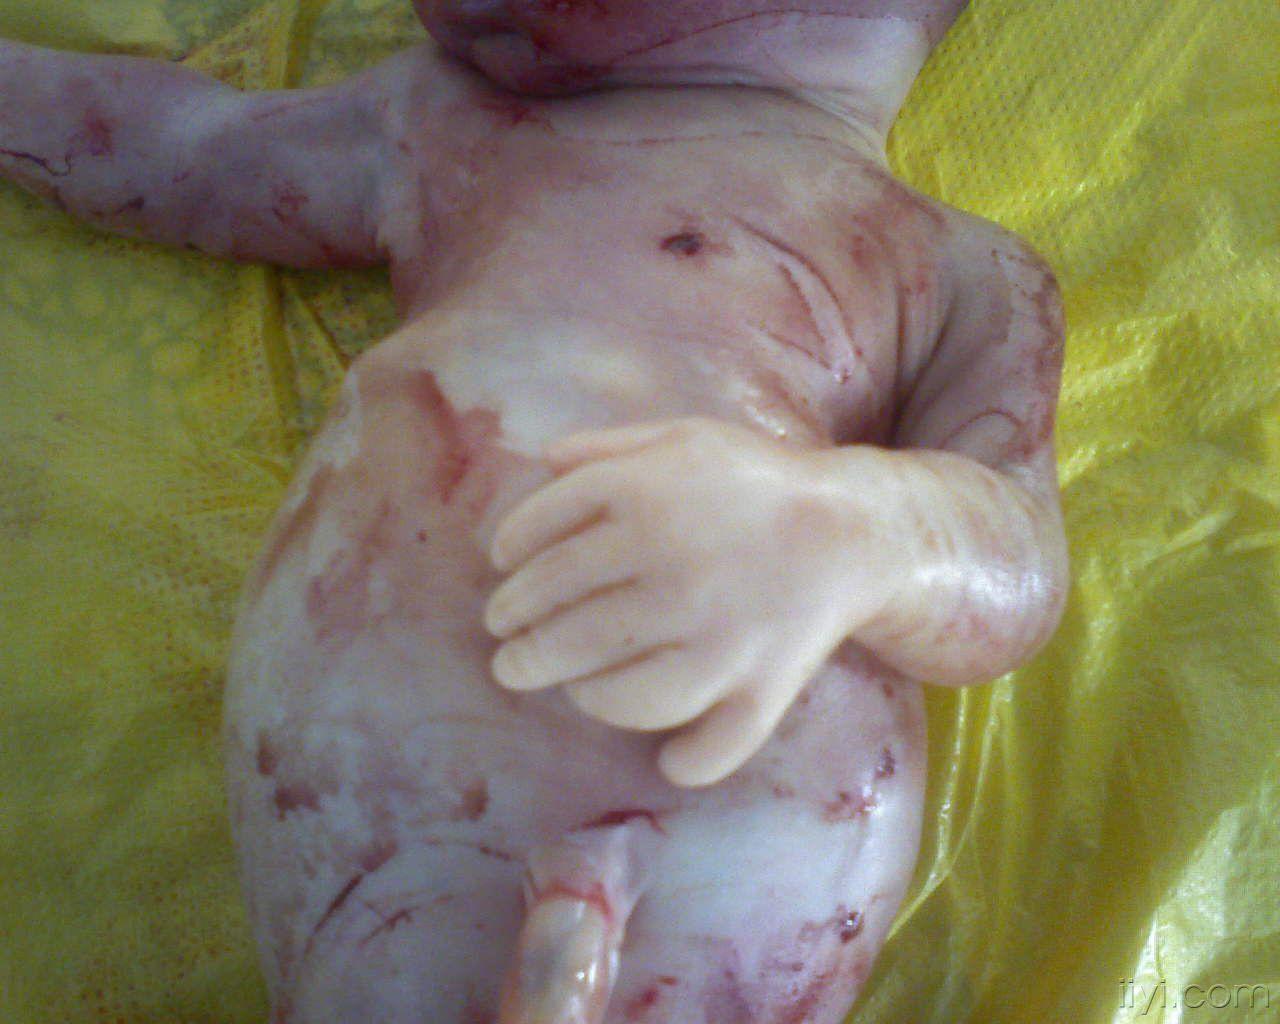 少见的胎儿六指畸形,同时存在骨发育不良!公布引产照片!